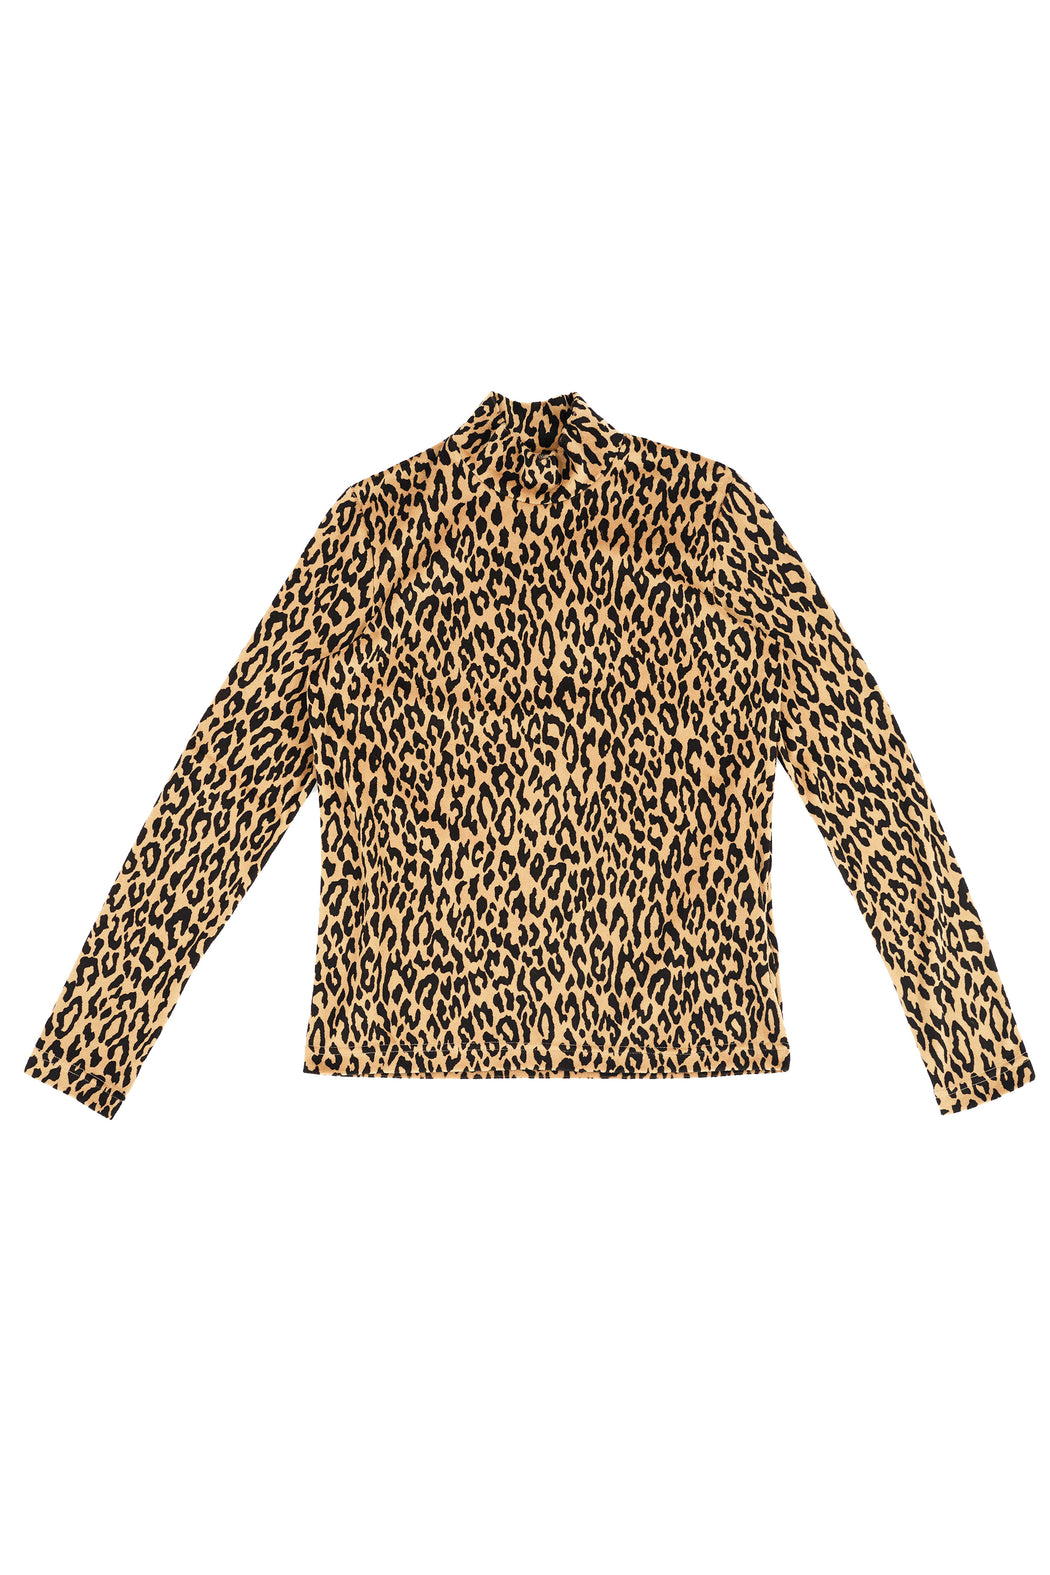 Leopard Long sleeve Shirt